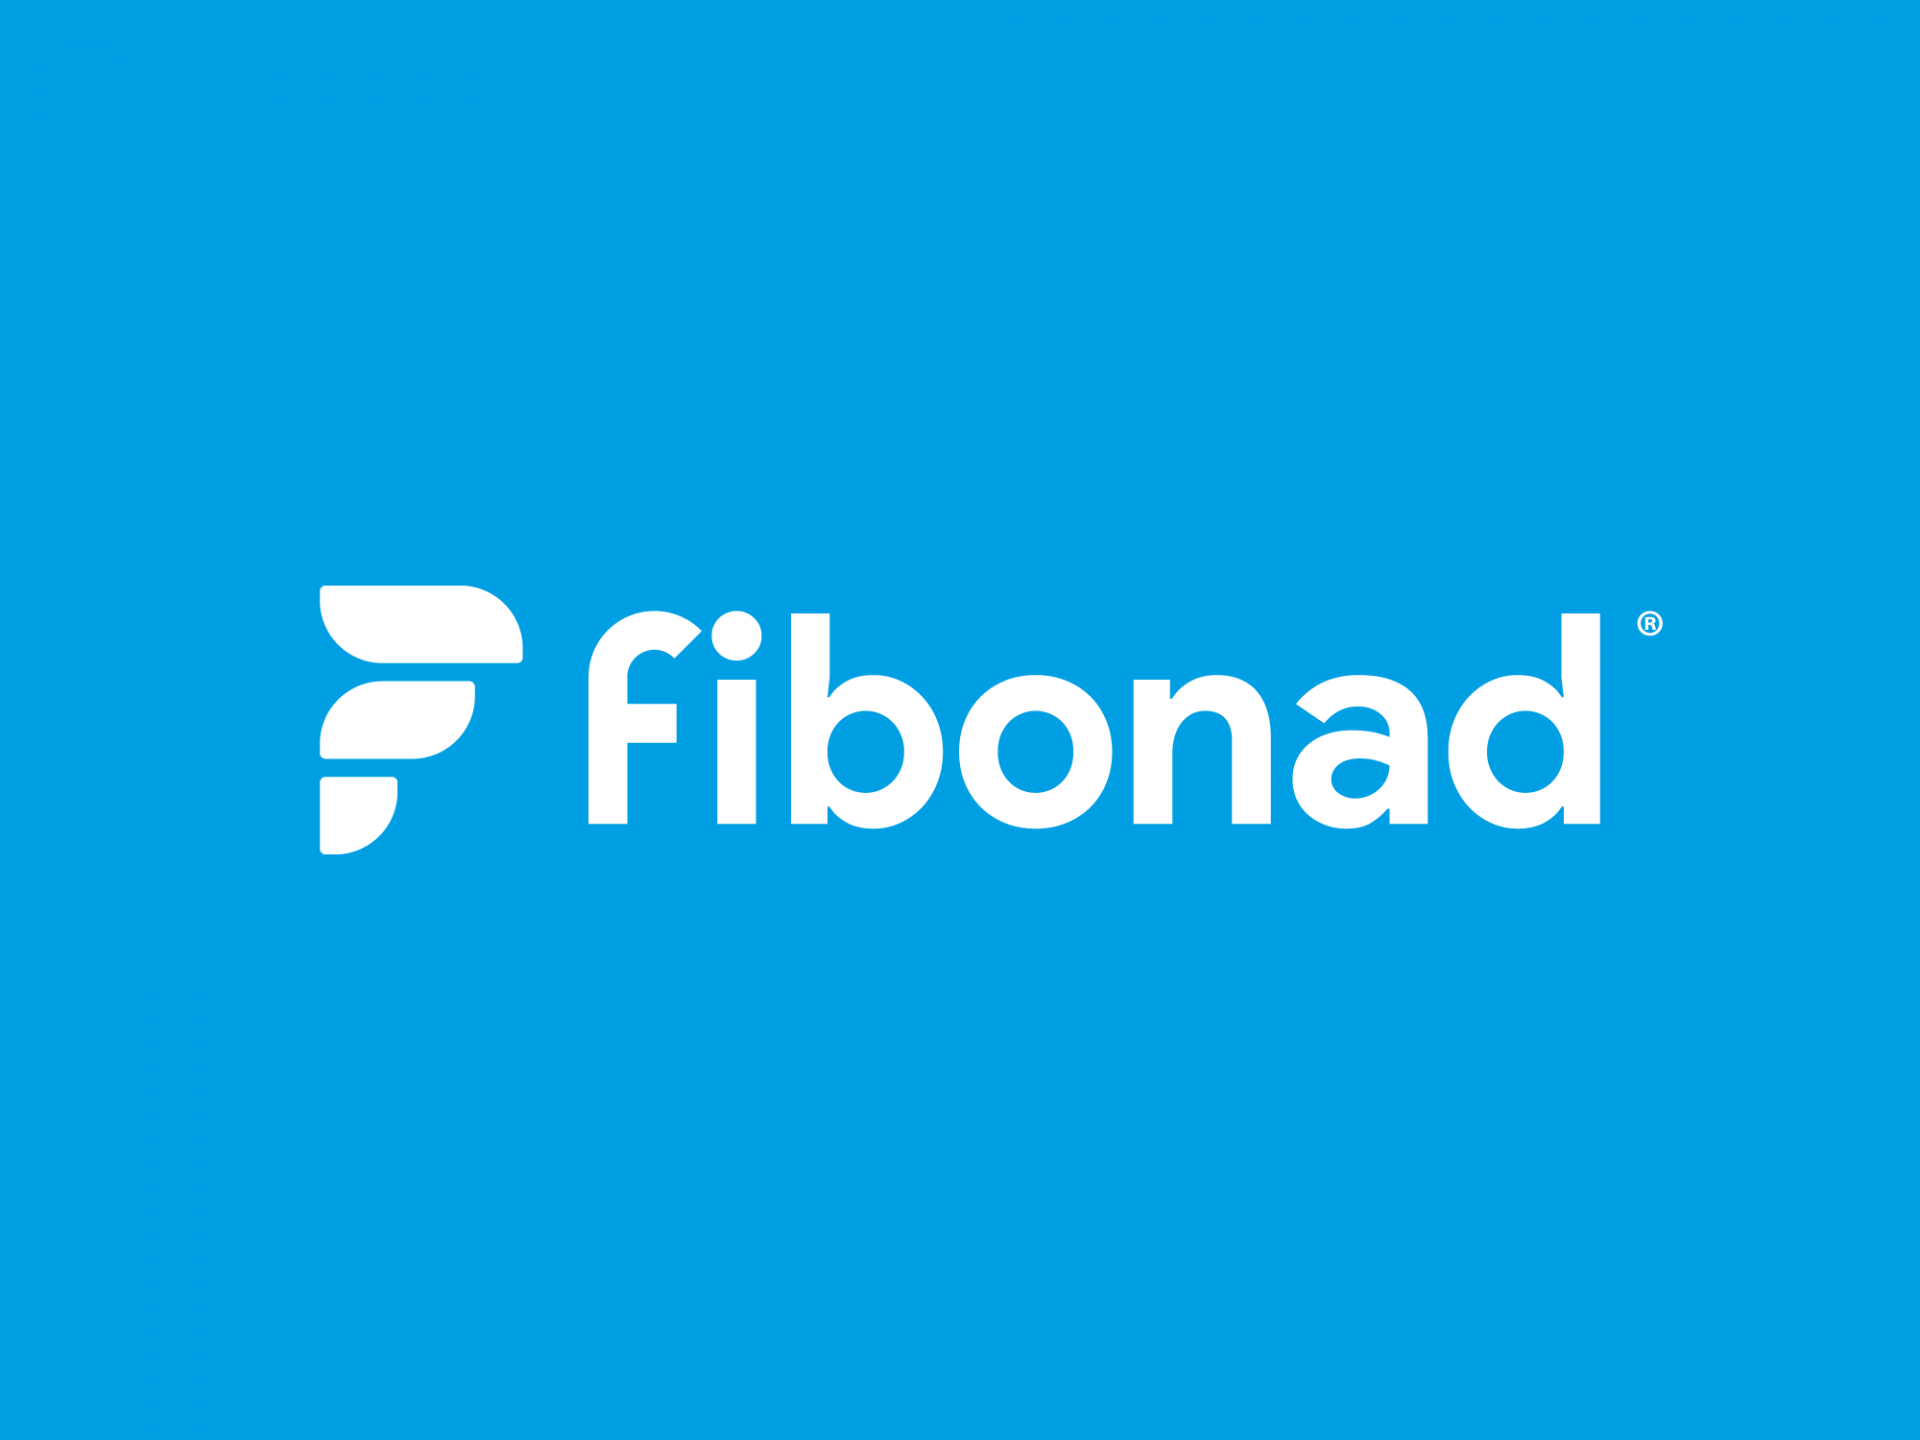 Diseño de logo Fibonad